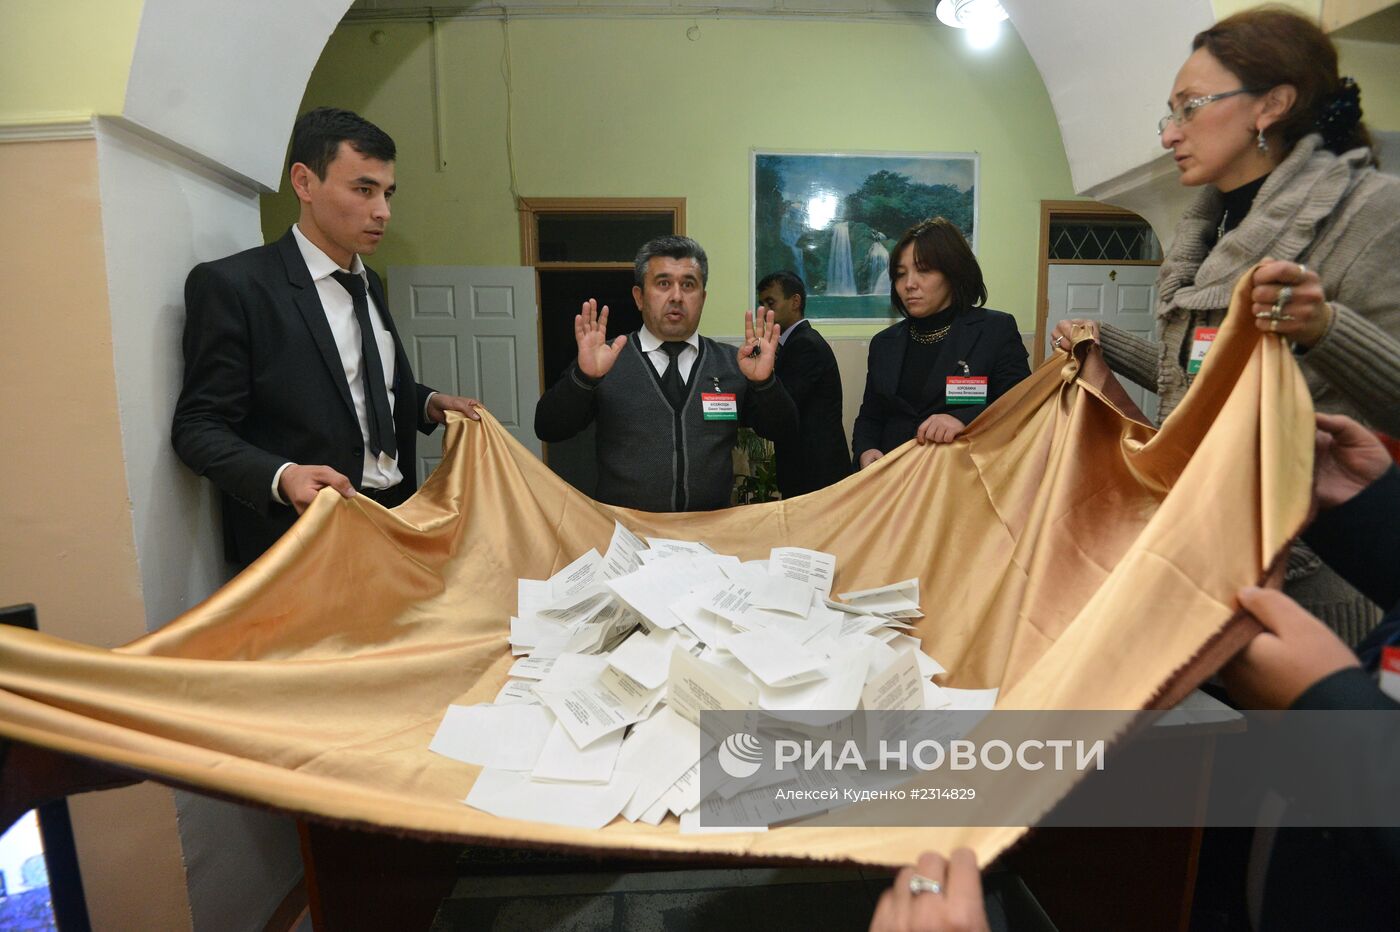 Подсчет голосов на выборах президента Таджикистана